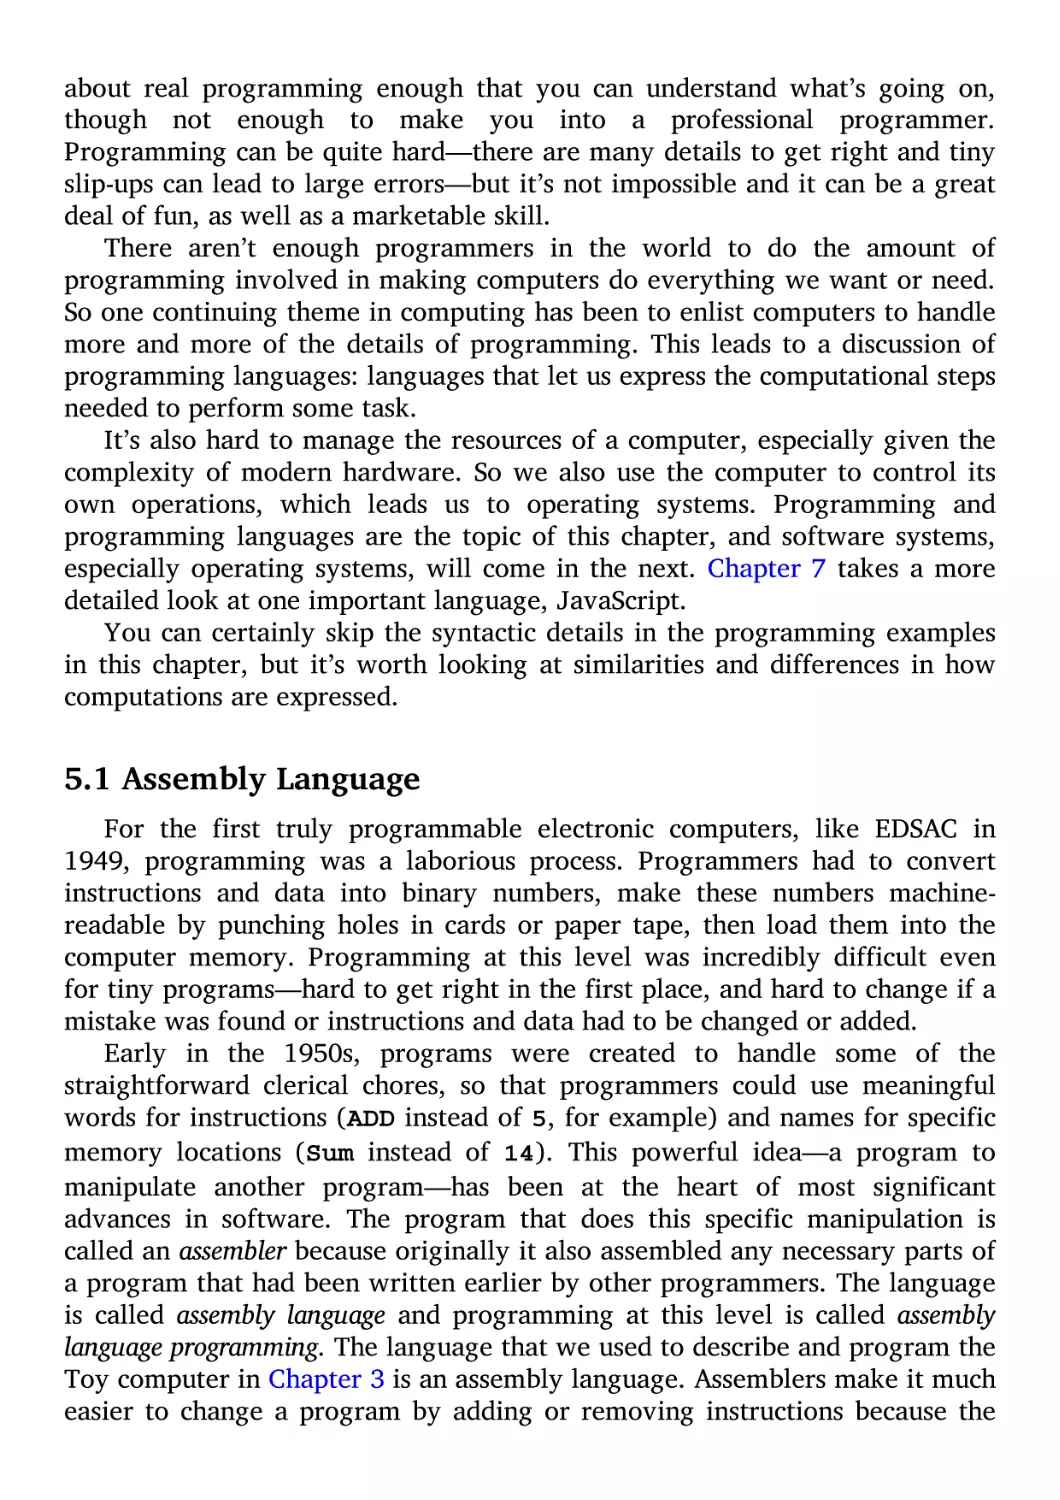 5.1 Assembly Language